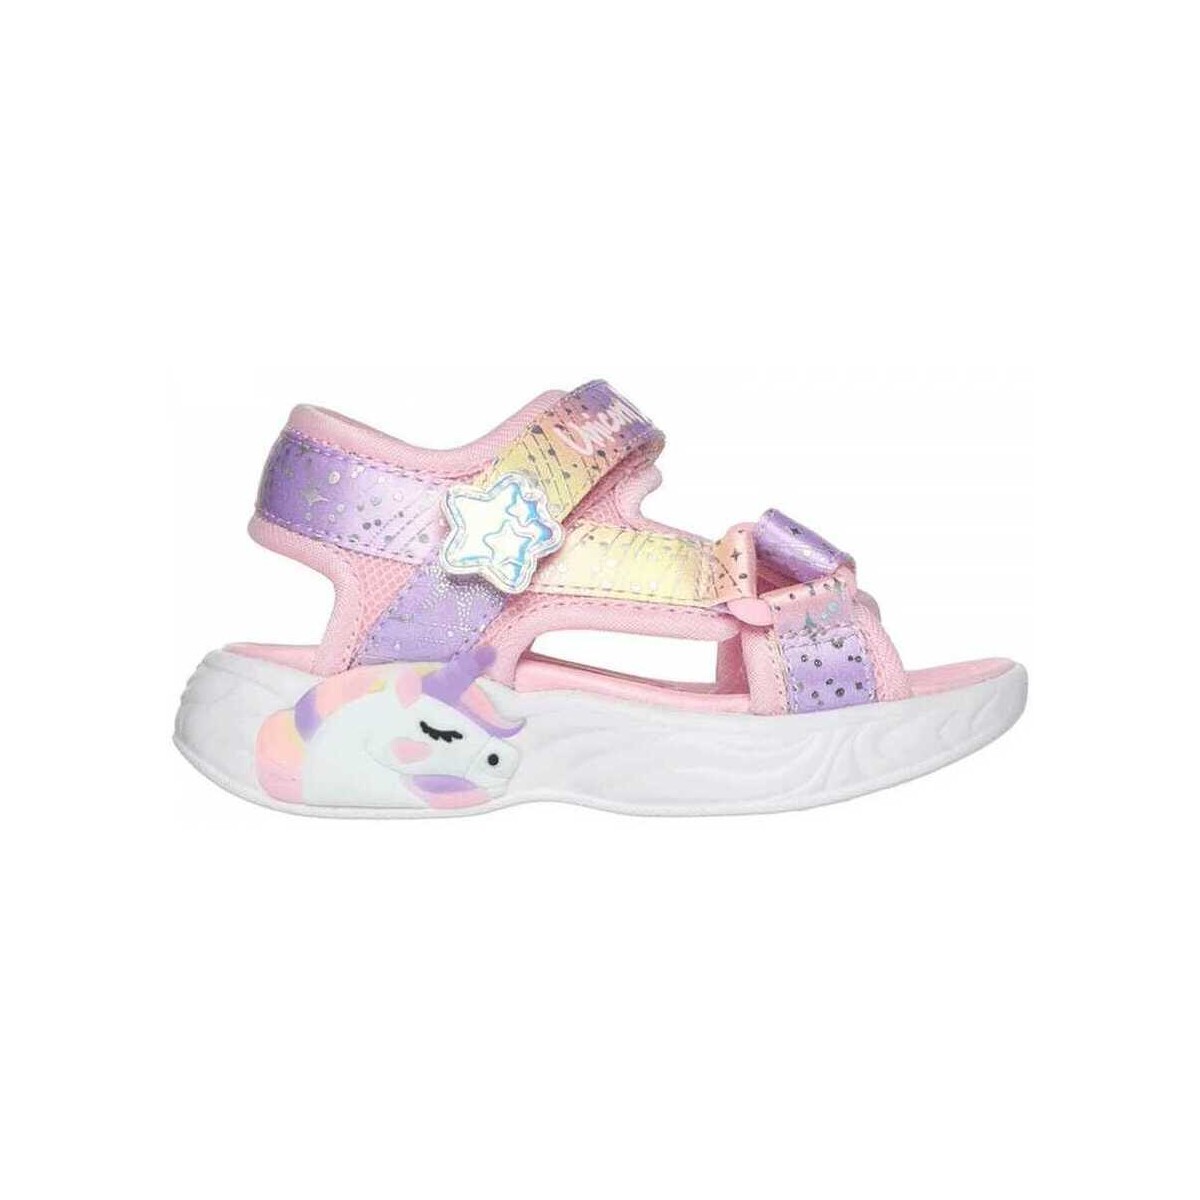 kengät Lapset Sandaalit ja avokkaat Skechers Unicorn dreams sandal - majes Vaaleanpunainen